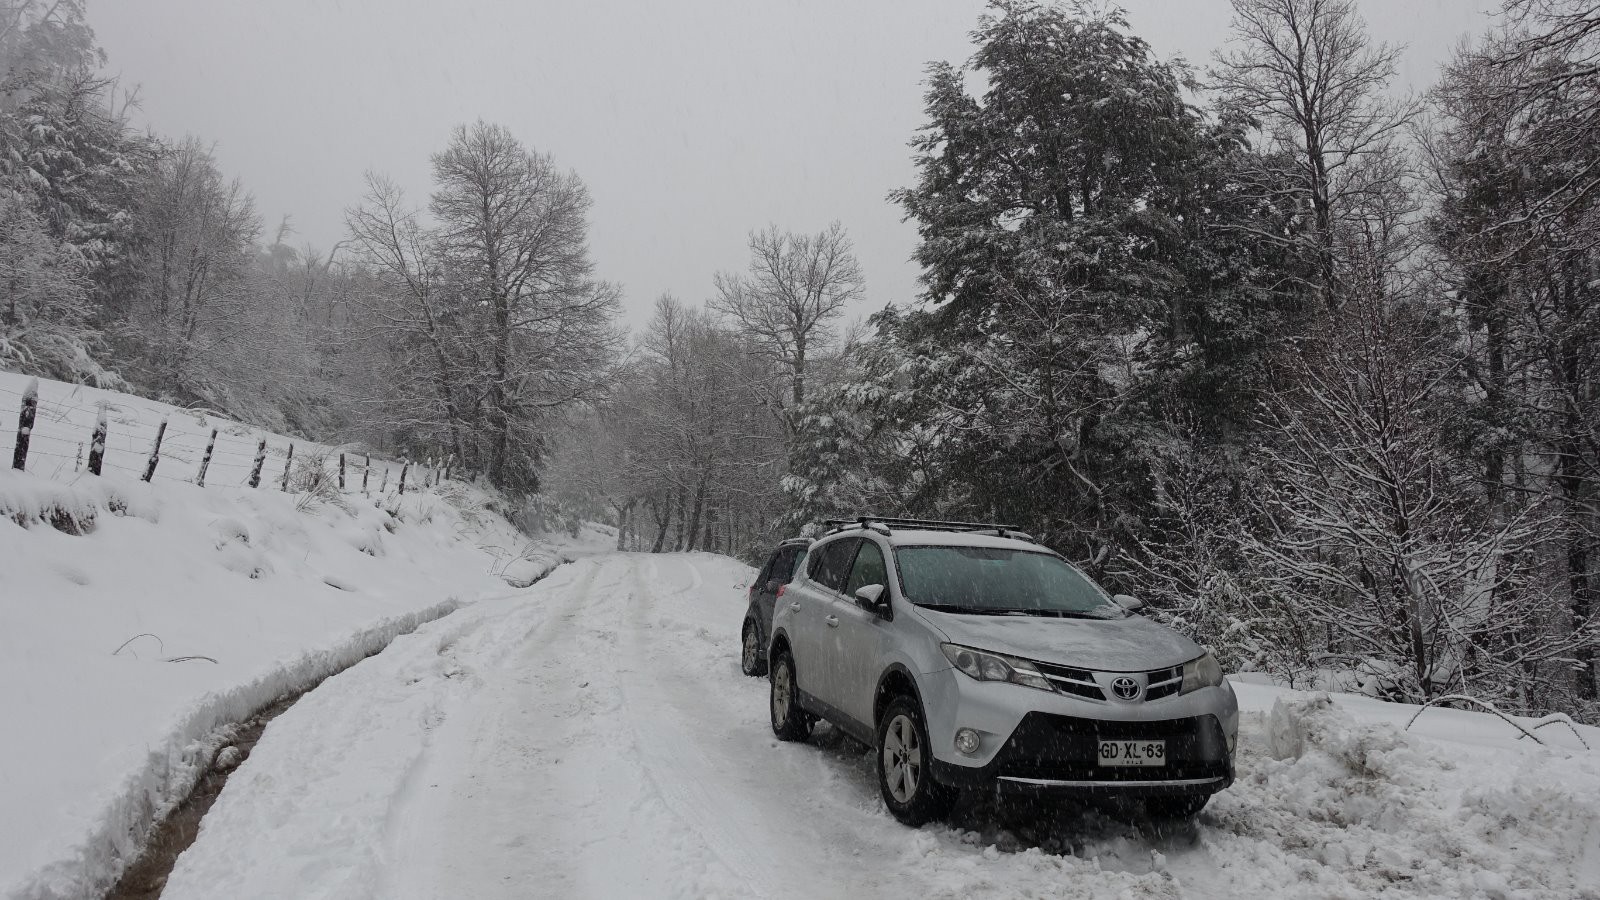 Au final, nous garons la voiture avant de faire demi tour et rentrer avant que les chutes de neige en cours n'aggravent encore la situation !